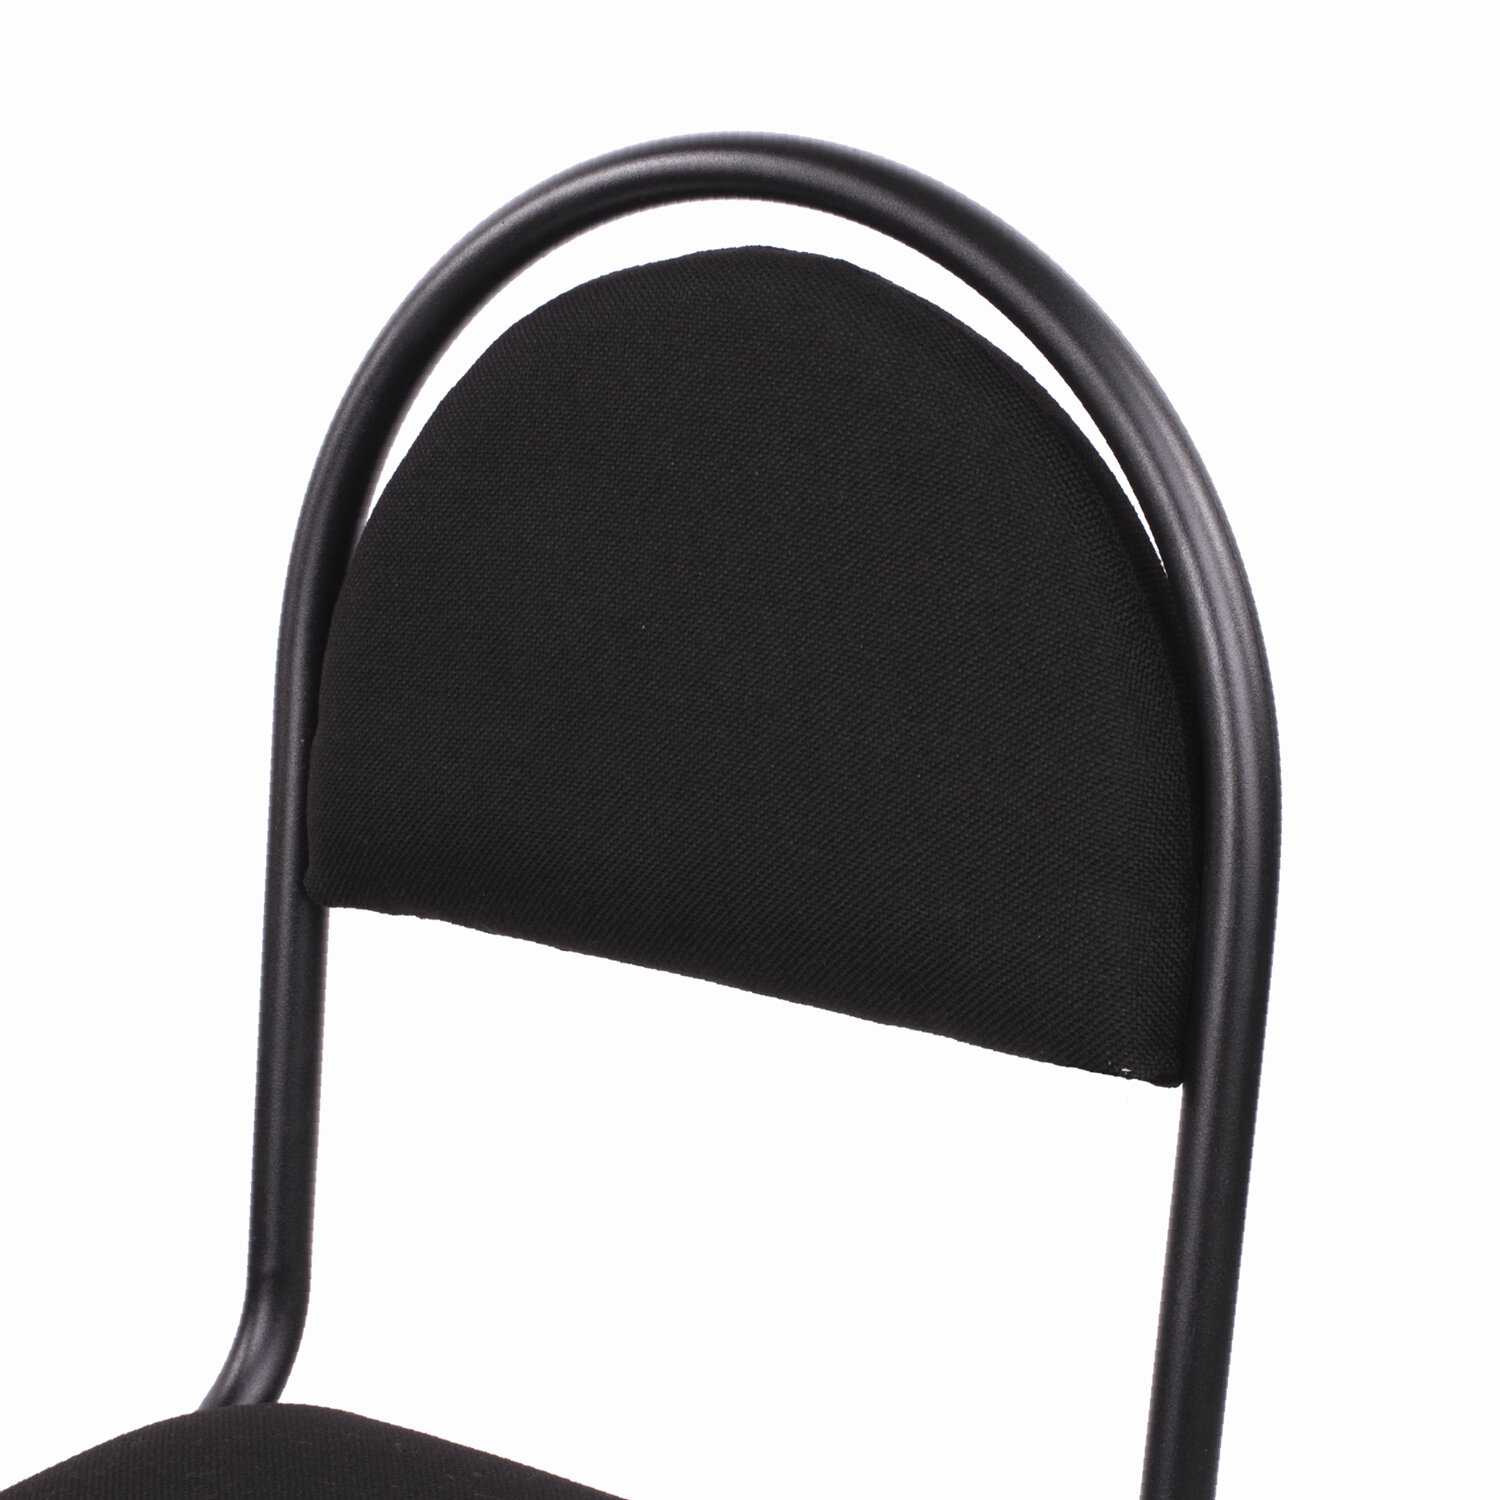 стул для посетителей рс 00л черный каркас кожзам черный